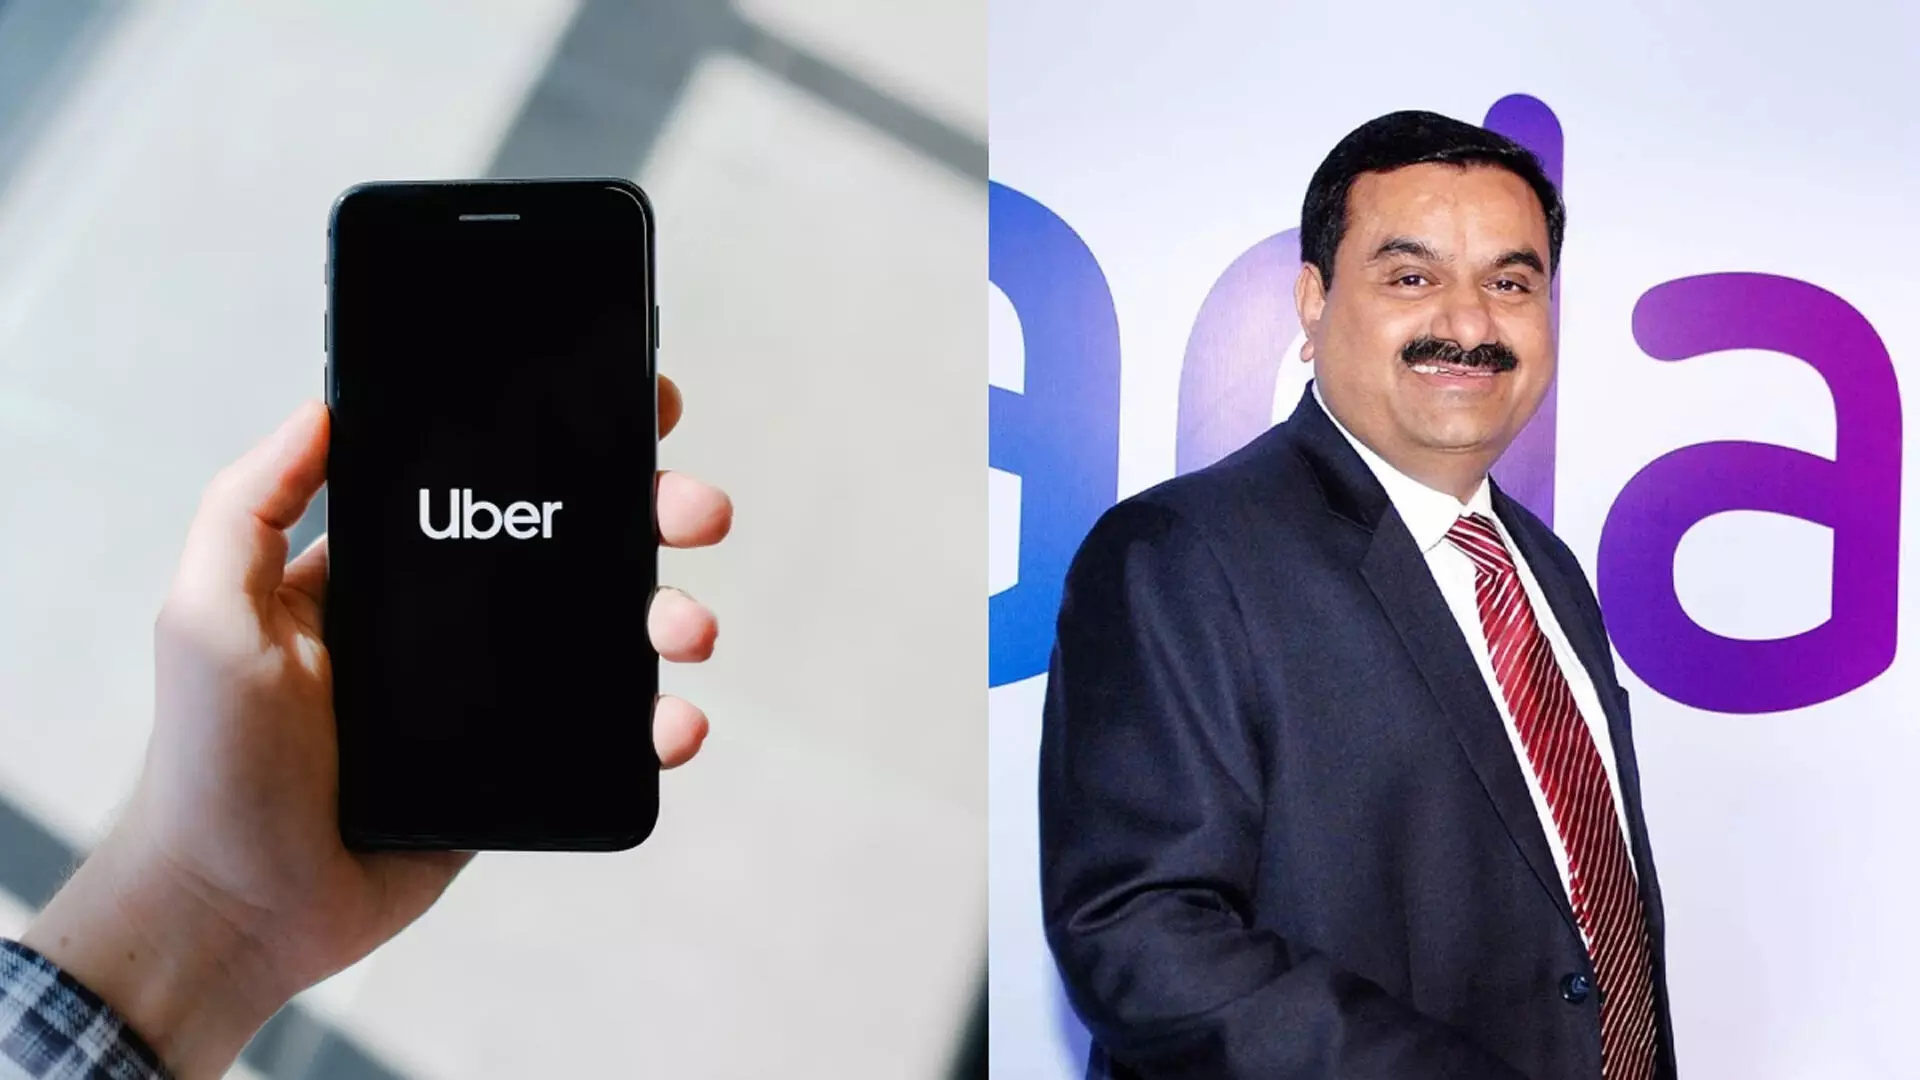 uber के साथ काम करेंगे गौतम अडानी ,CEO दारा खोसरोशाही से की मुलाकात